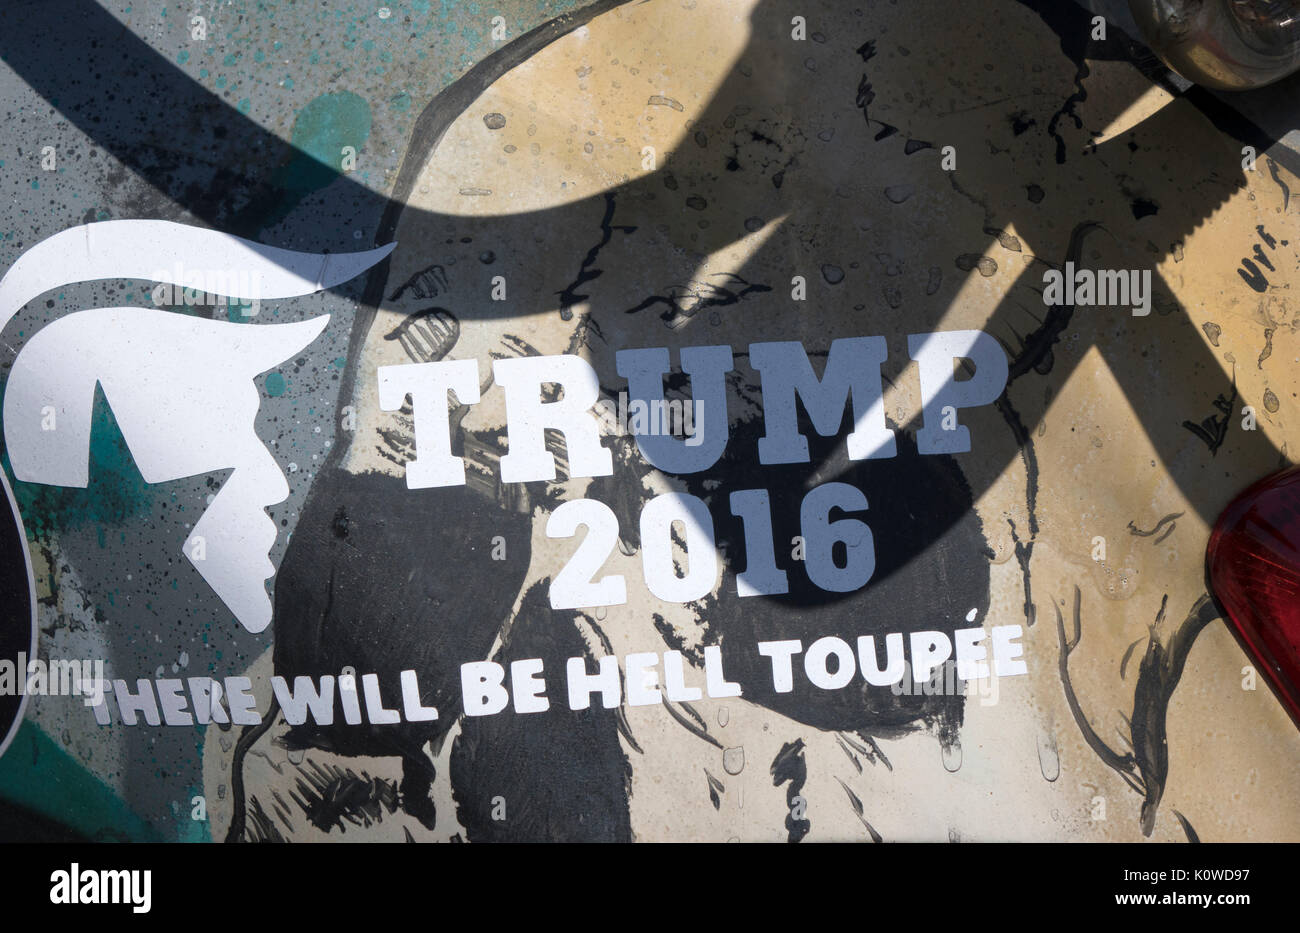 Amüsante Fahrzeug Aufkleber Aufkleber über Donald Trump Preseidential Kampagne 2016 - 2016 oeTrump Es wird die Hölle Toupeeâ € gesehen in Sydney, Australien. Stockfoto